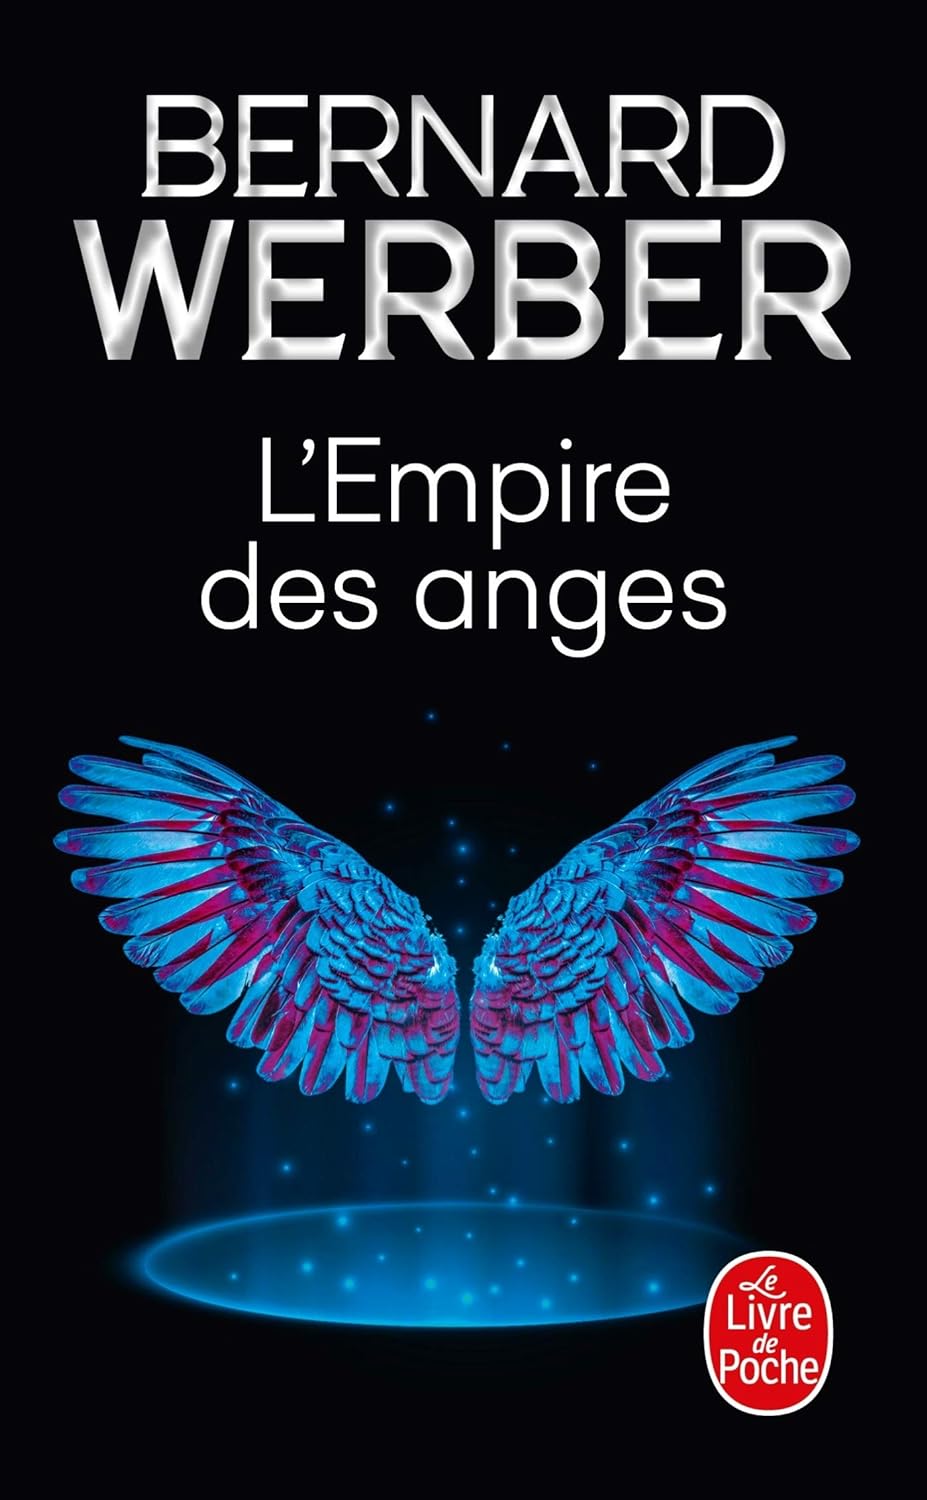 Bernard Werber: L'Empire des anges (Hardcover, French language, 2001, Le Livre de Poche)